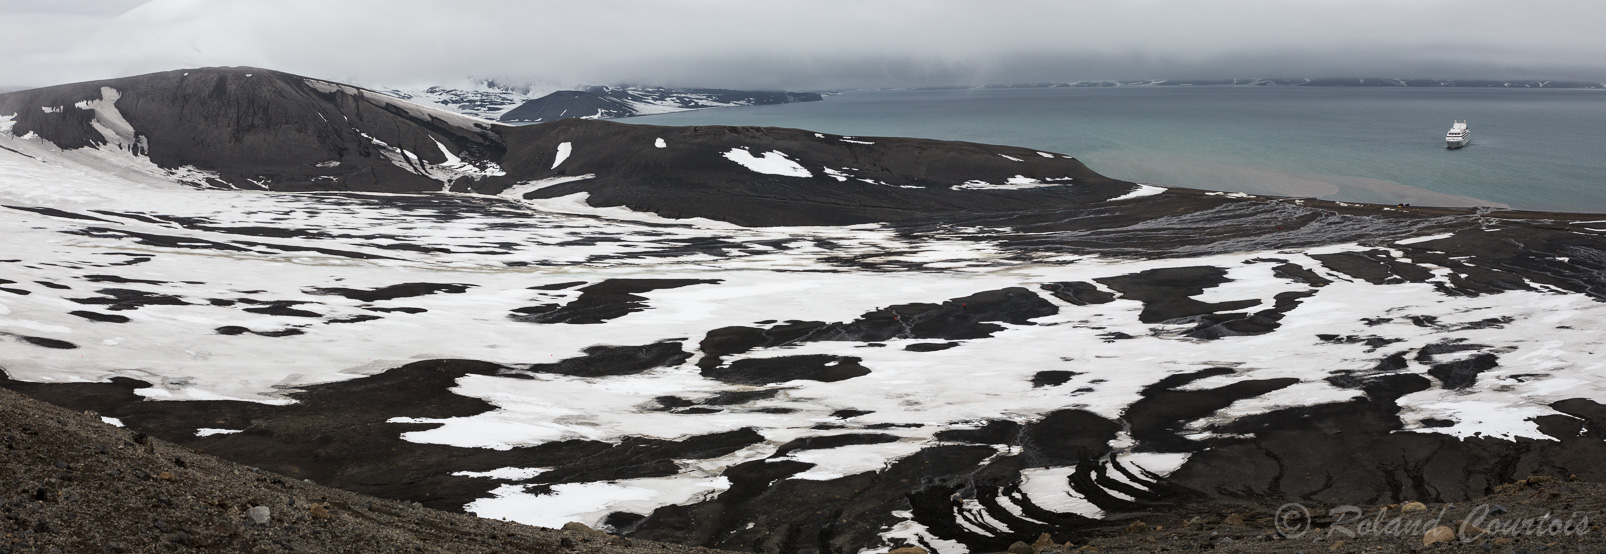 Vue sur la caldera depuis le bord du cratère secondaire.